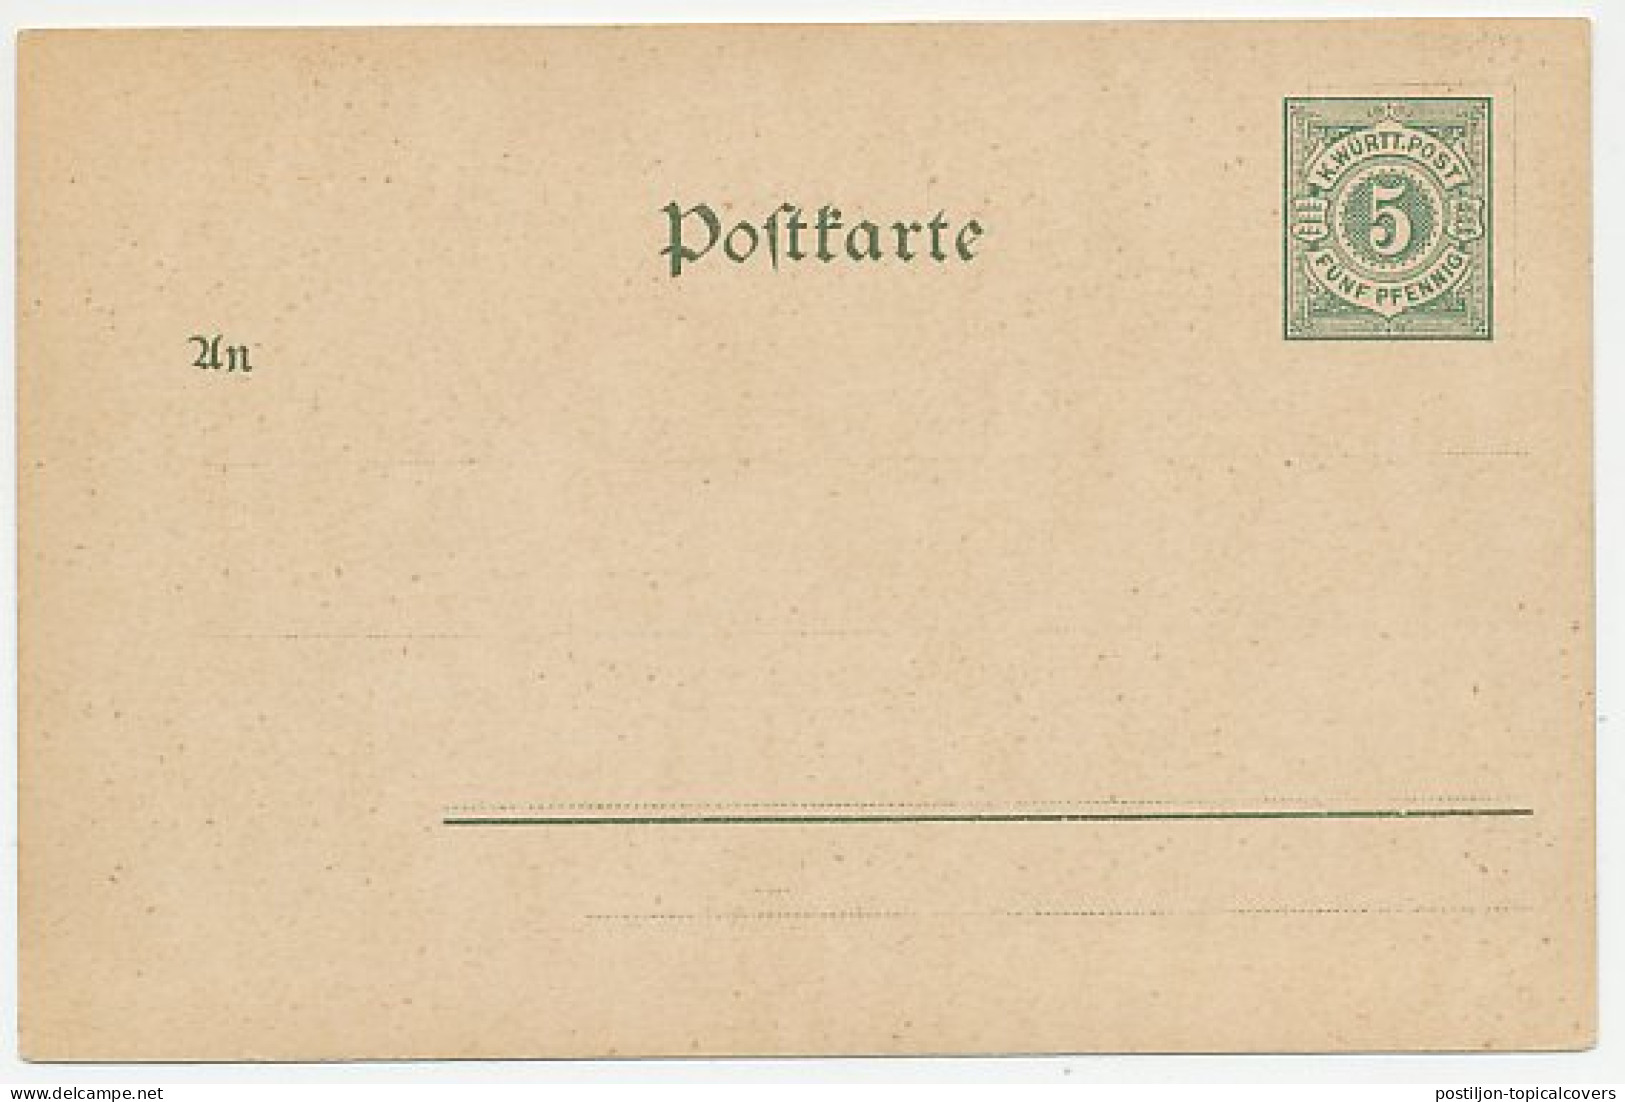 Postal Stationery Wurttemberg Hylas - Karl Olga - Eberhard - Mitología